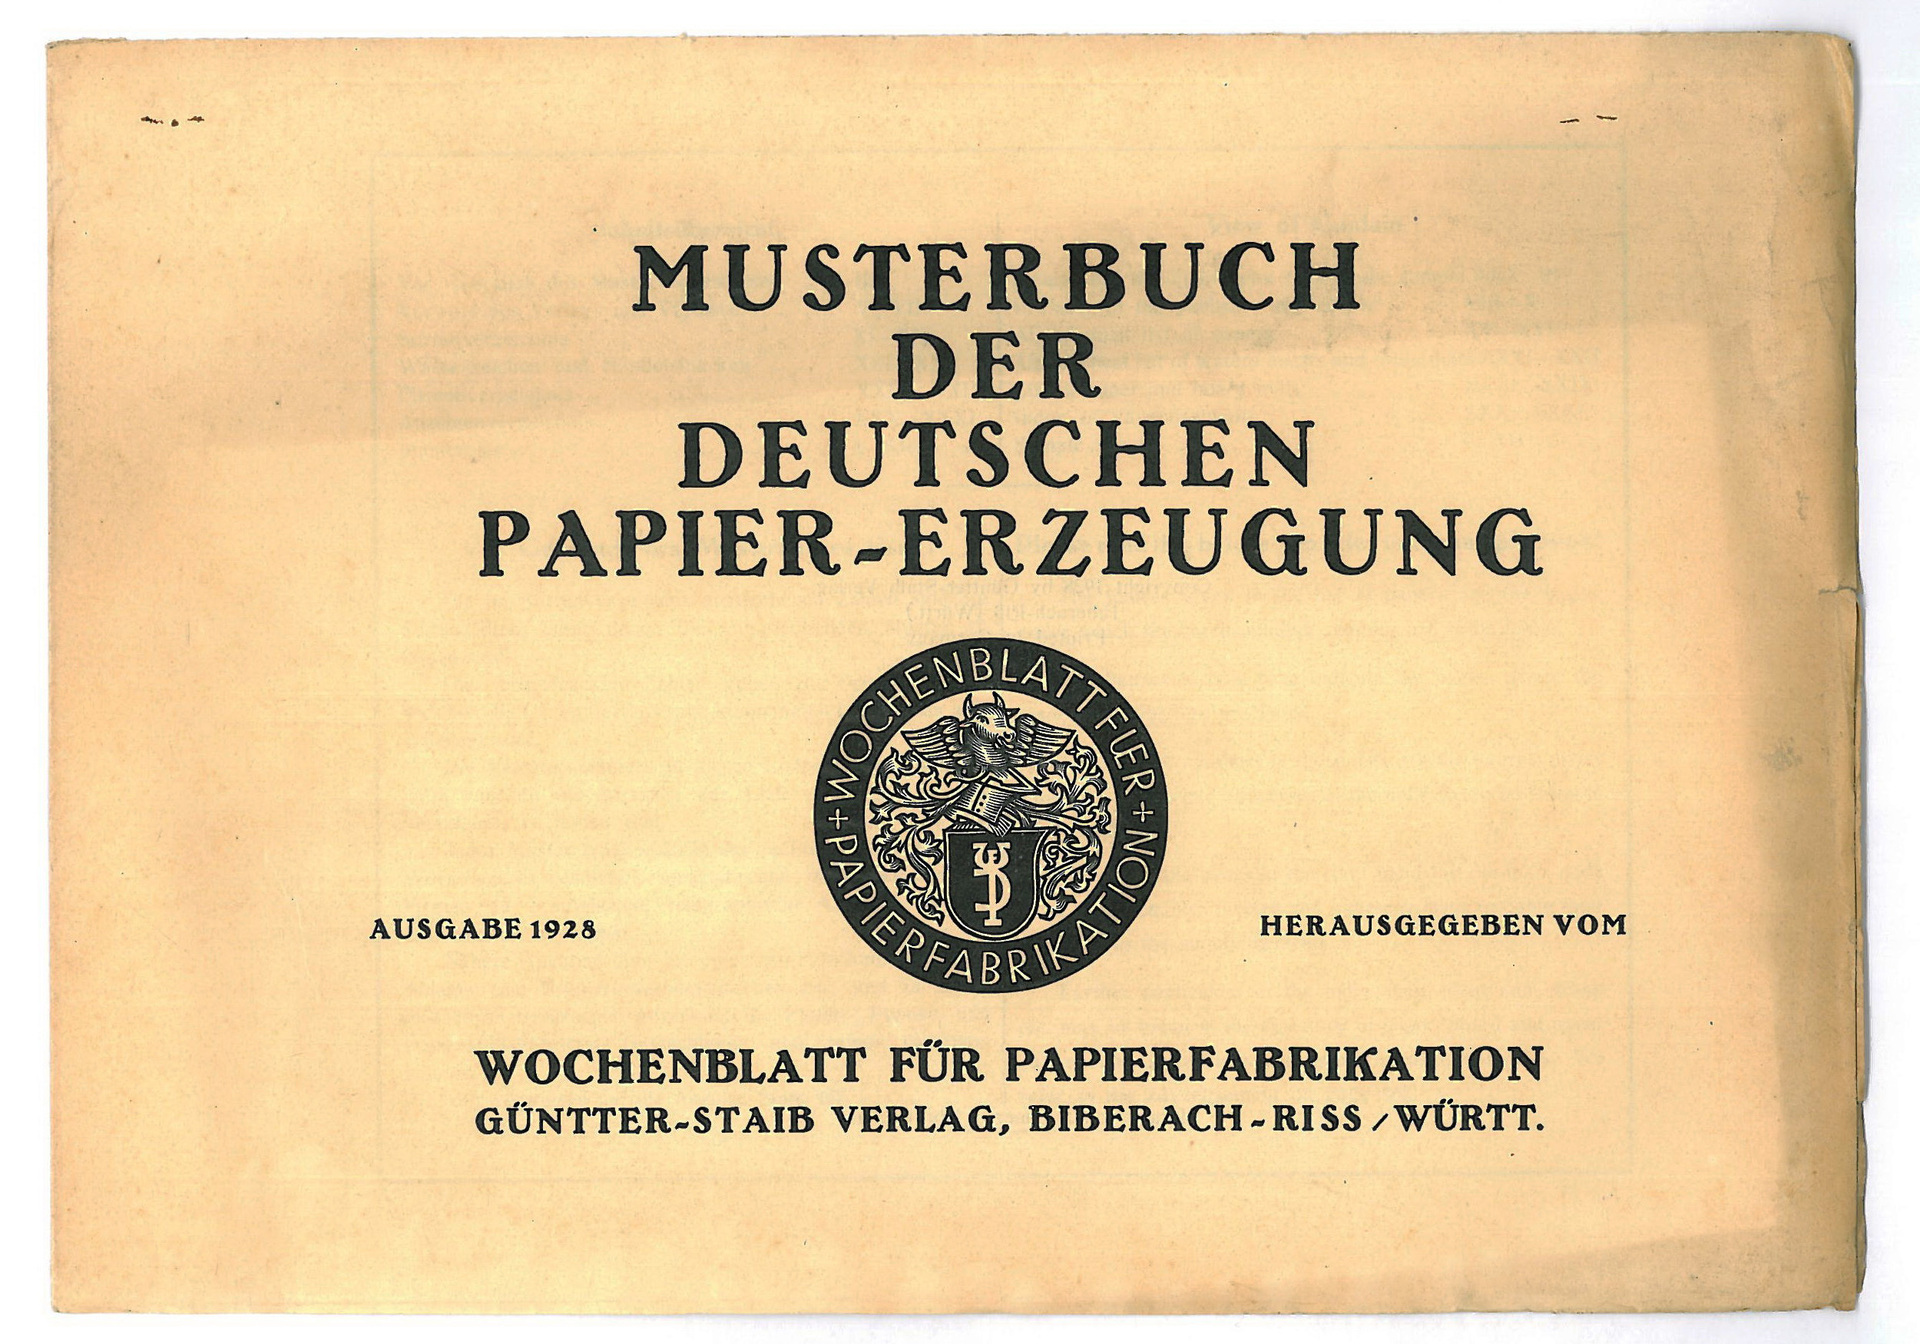 Musterbuch der deutschen Papier-Erzeugung